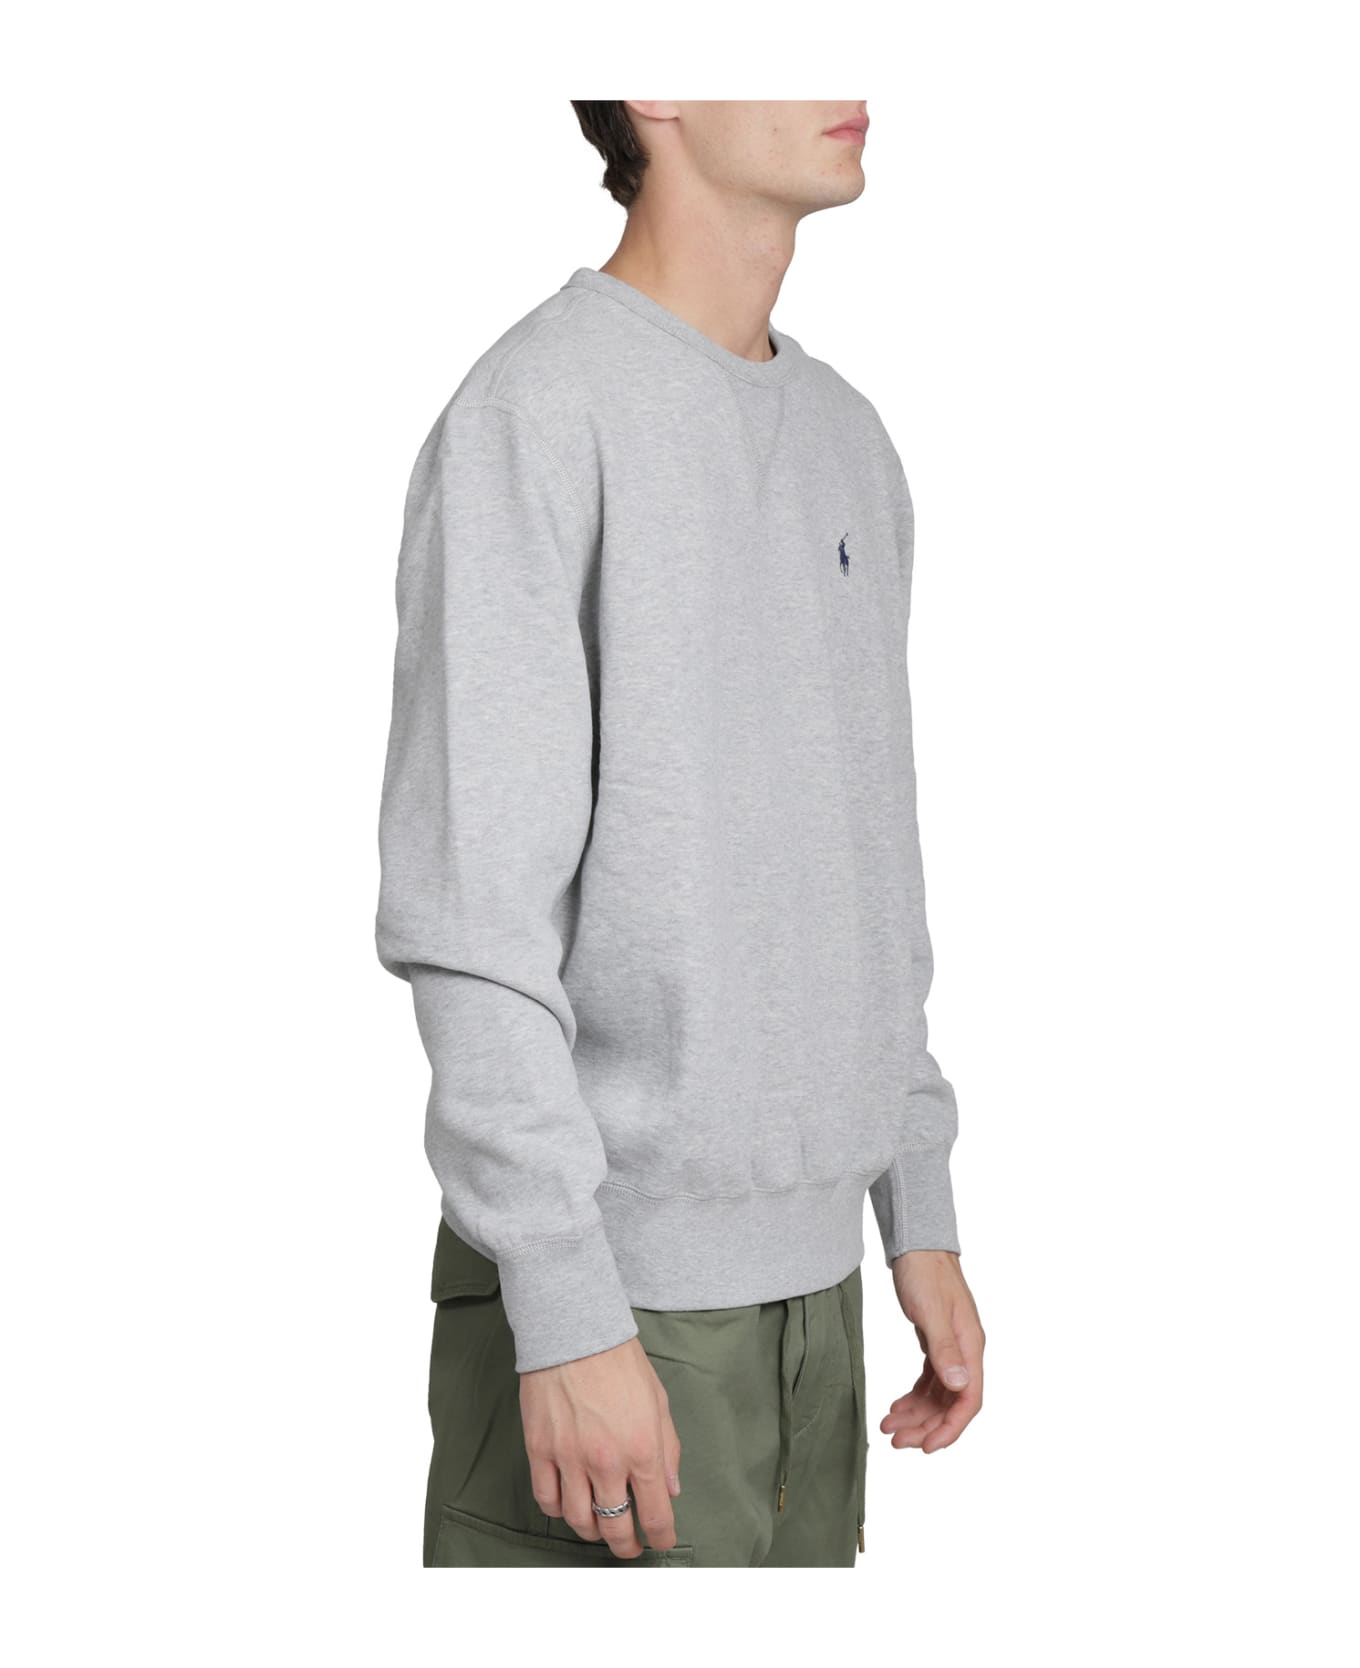 Ralph Lauren Grey Crewneck Sweater - GREY